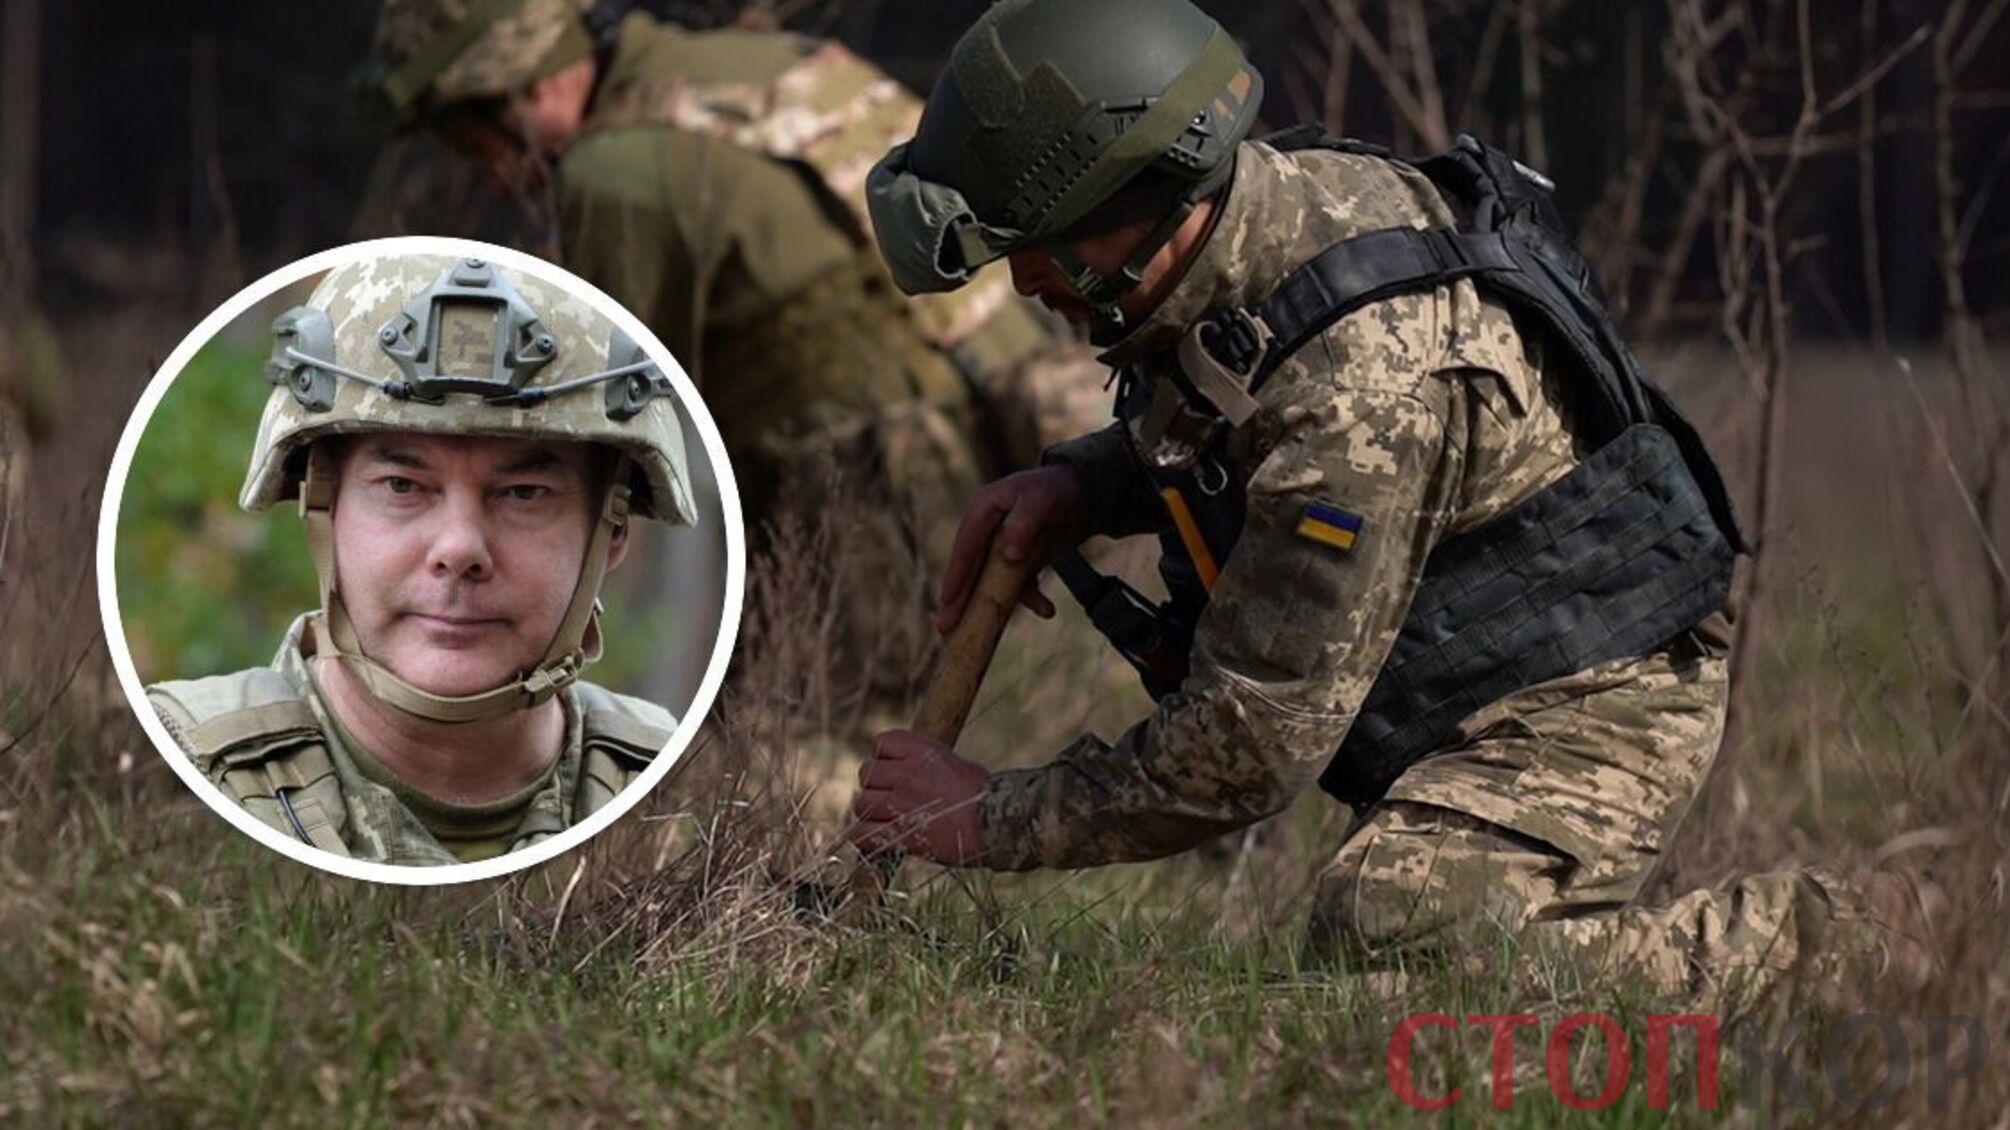 Білорусь проводить військові навчання: ЗСУ готові до адекватного реагування, – Наєв